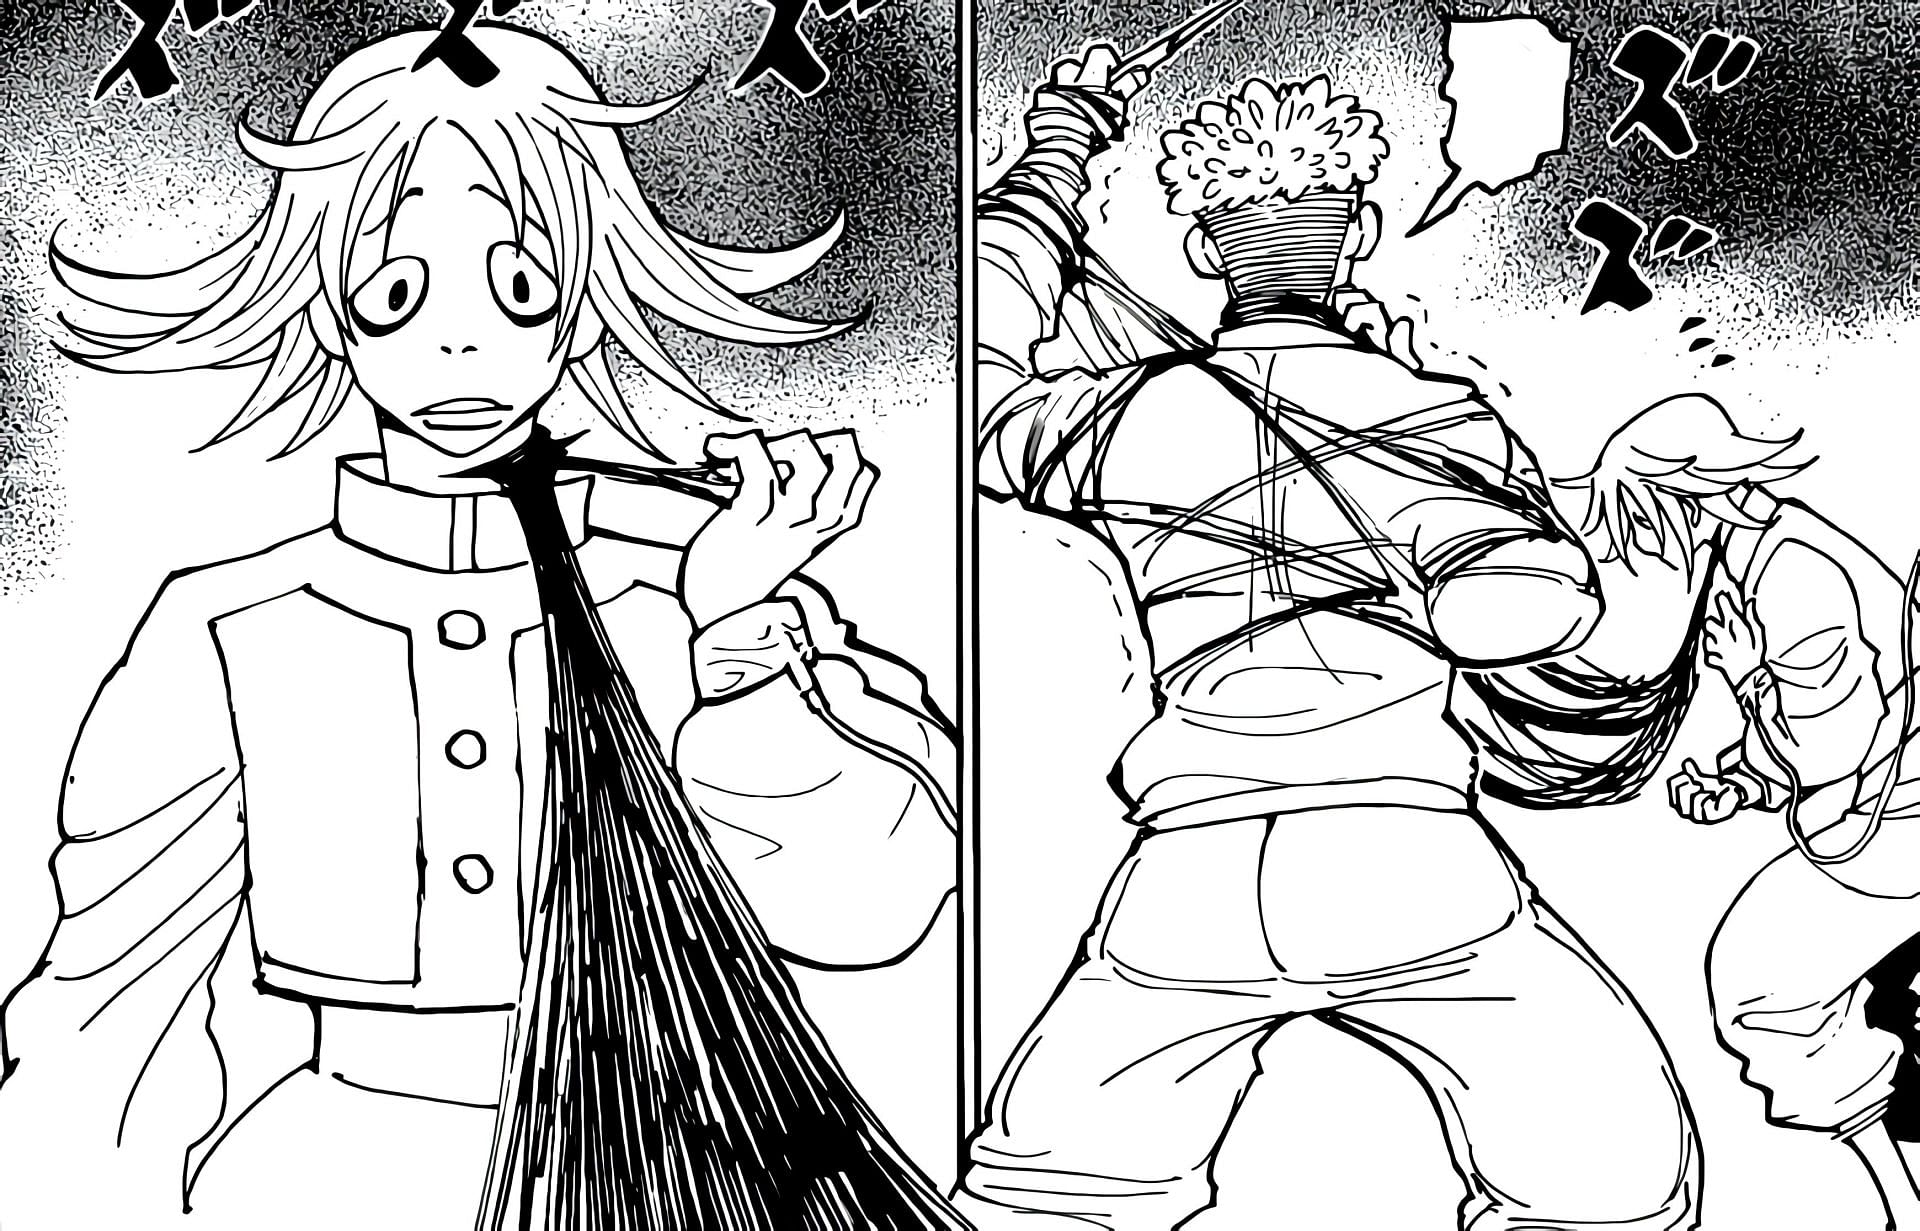 Zakuro as seen in the manga (Image via Shueisha)